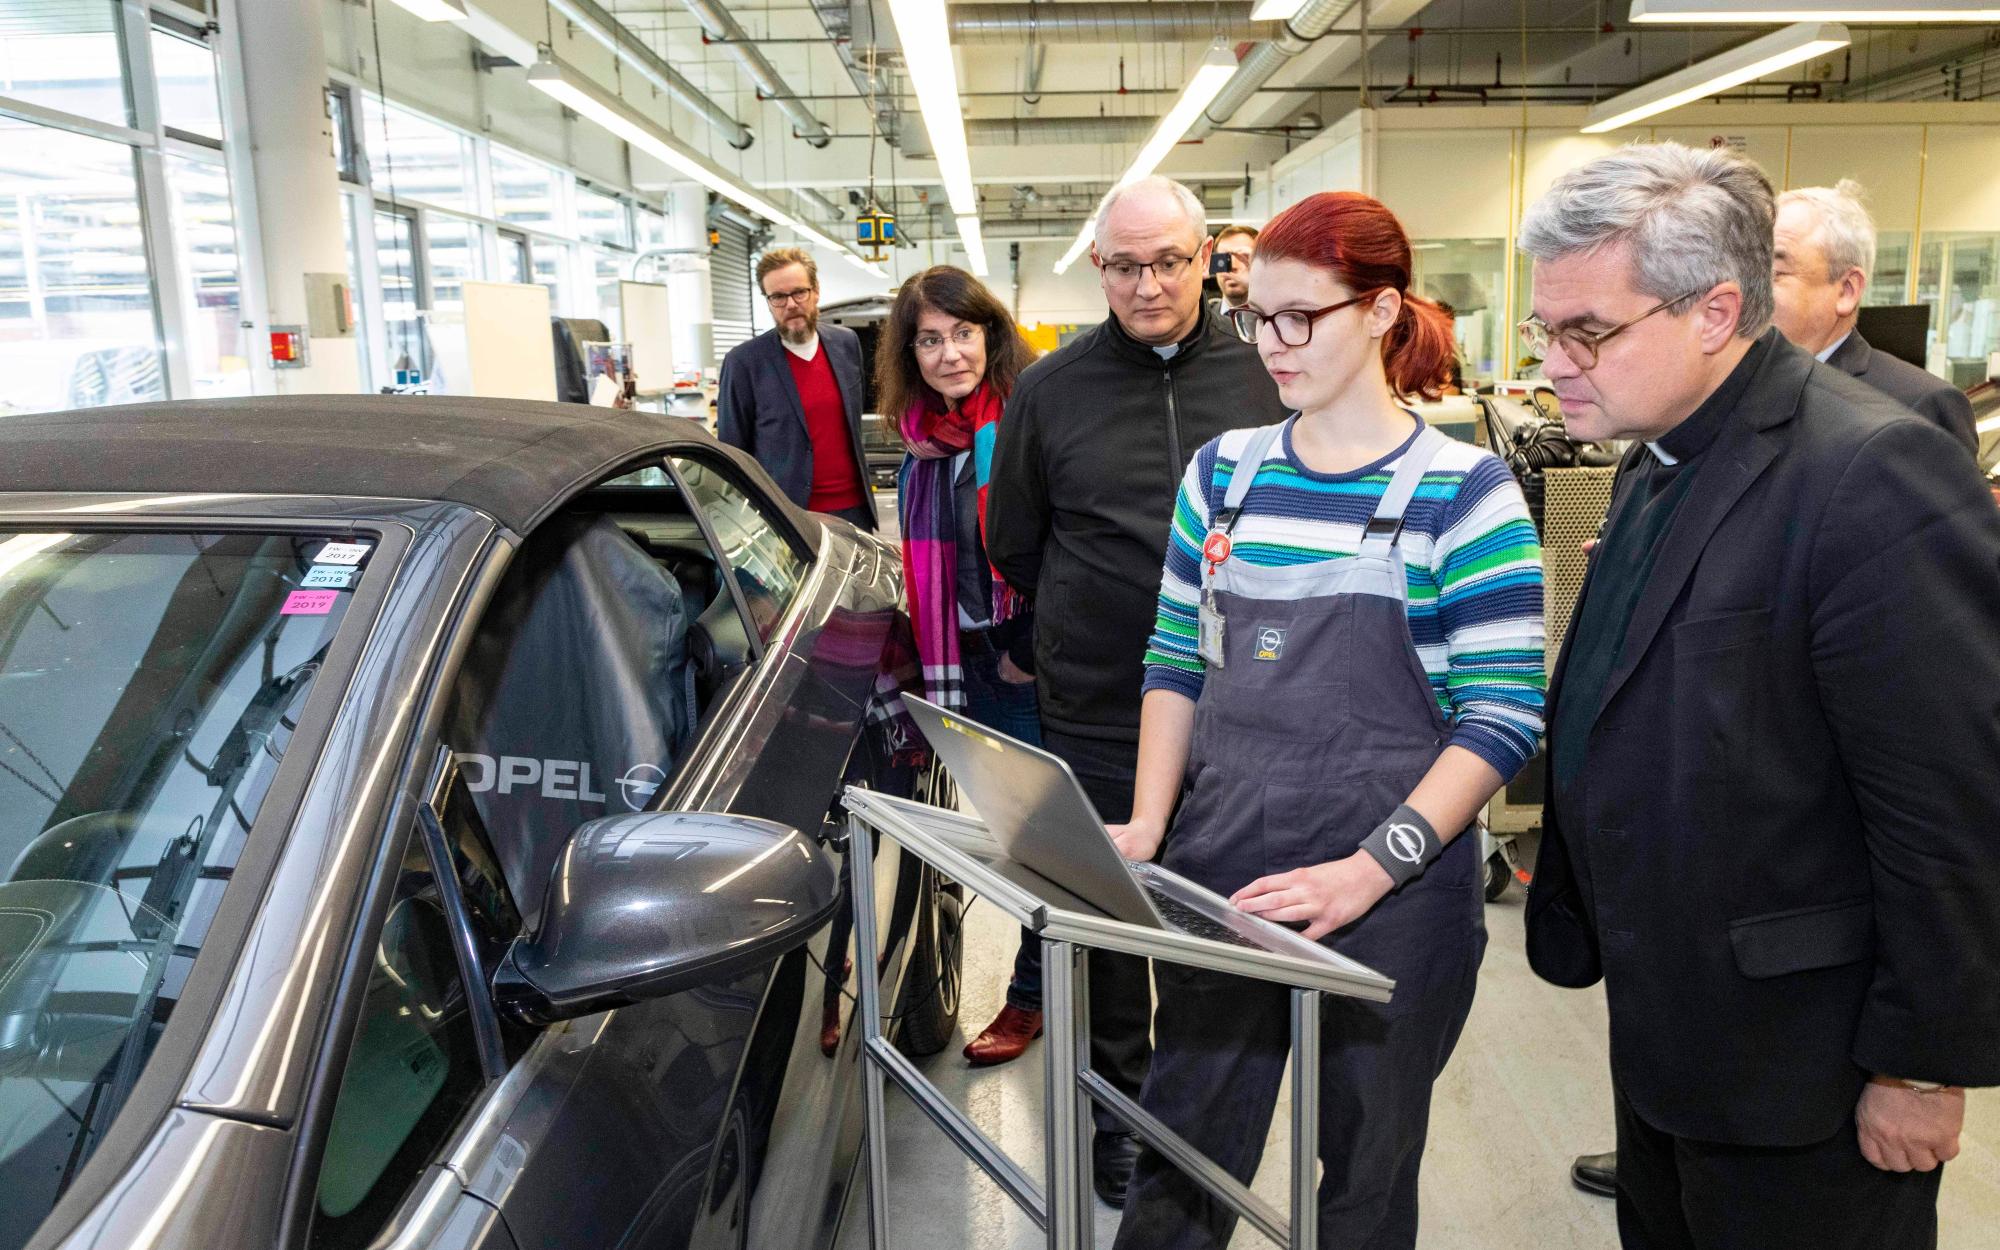 Rüsselsheim, 21.11.2019: Weihbischof Udo Markus Bentz (r.) im Opel-Ausbildungszentrum im Gespräch mit Lena Heck (2.v.r.), die eine Ausbildung zur Kraftfahrzeugmechatronikerin absolviert. (c) Opel